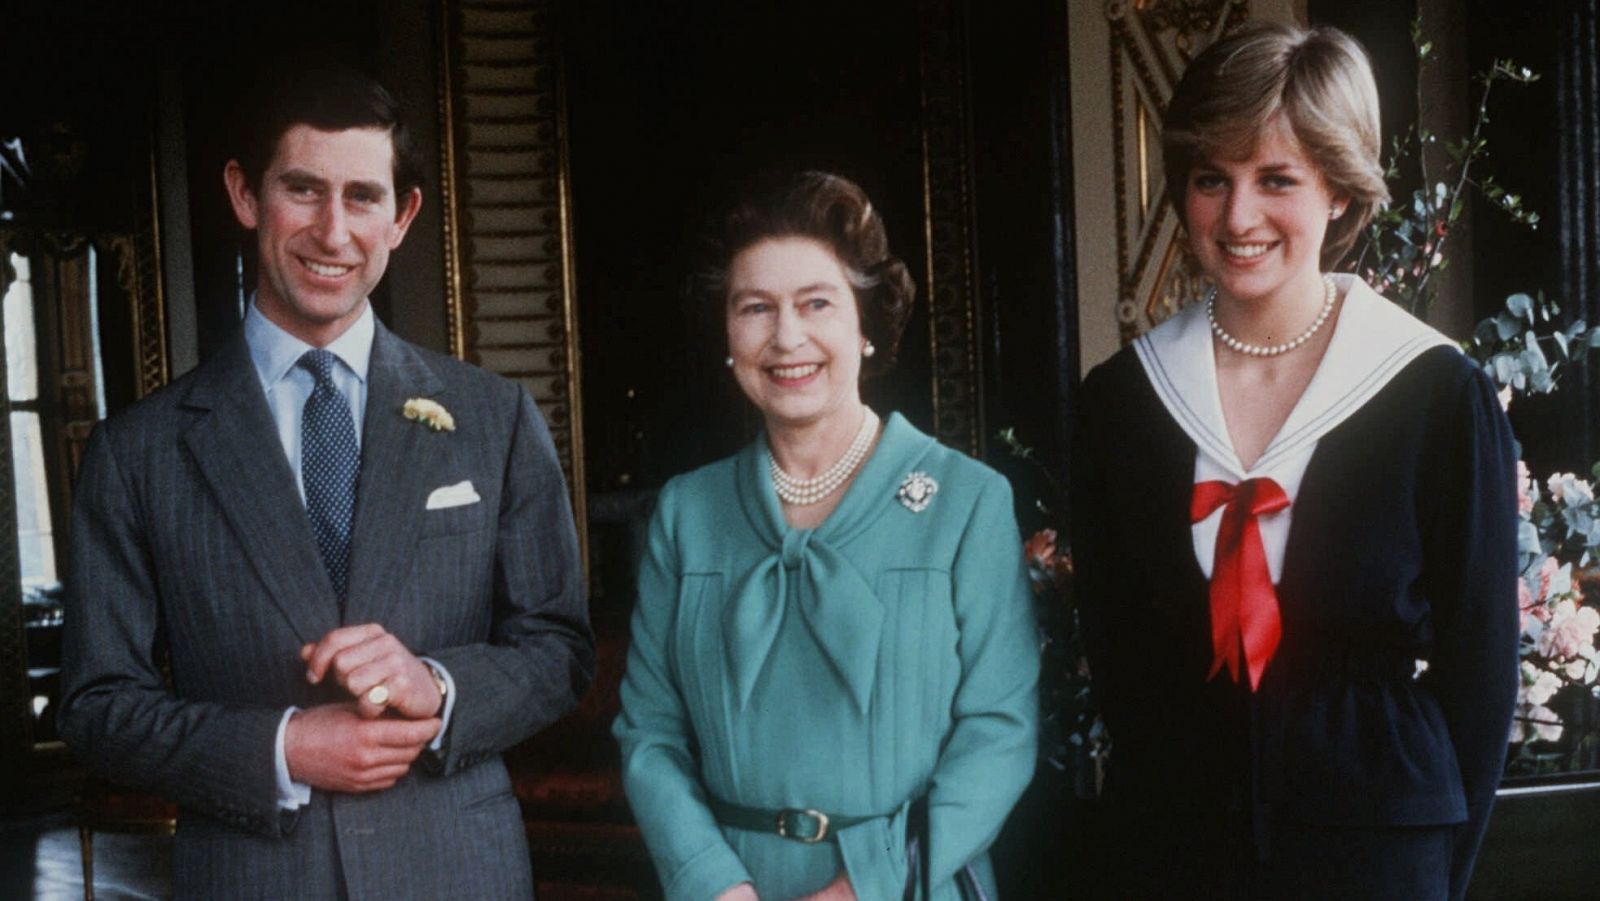 Carlos de Inglaterra y Diana Spencer posan junto a Isabel II en marzo de 1981, después de que la reina diera su consentimiento al matrimonio de la pareja.